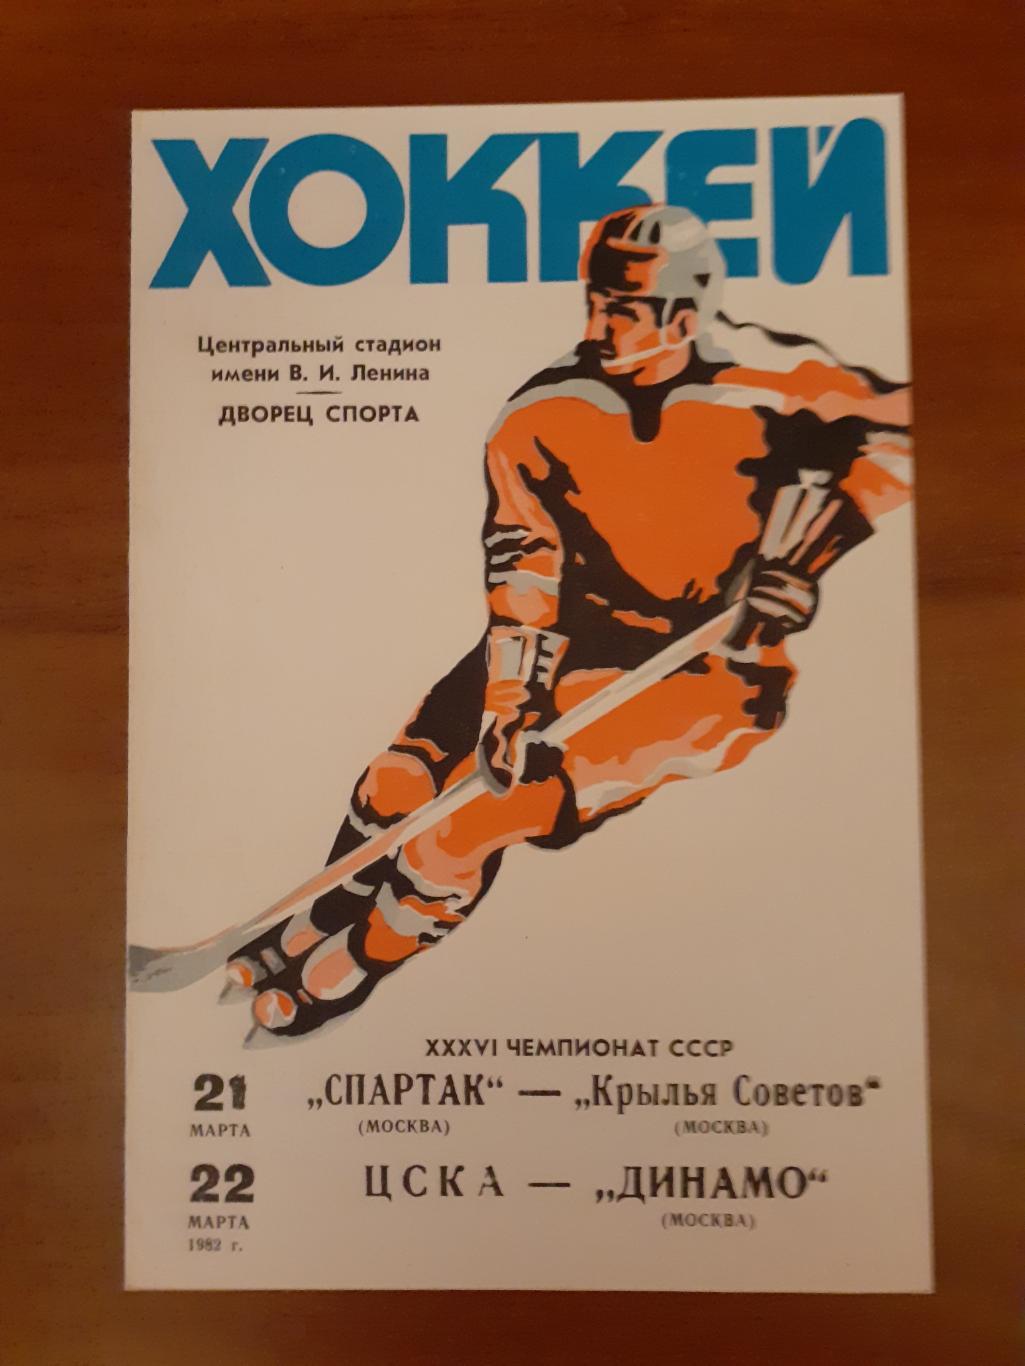 Динамо, Спартак, Крылья Советов, ЦСКА - 1982. 21-22 марта..